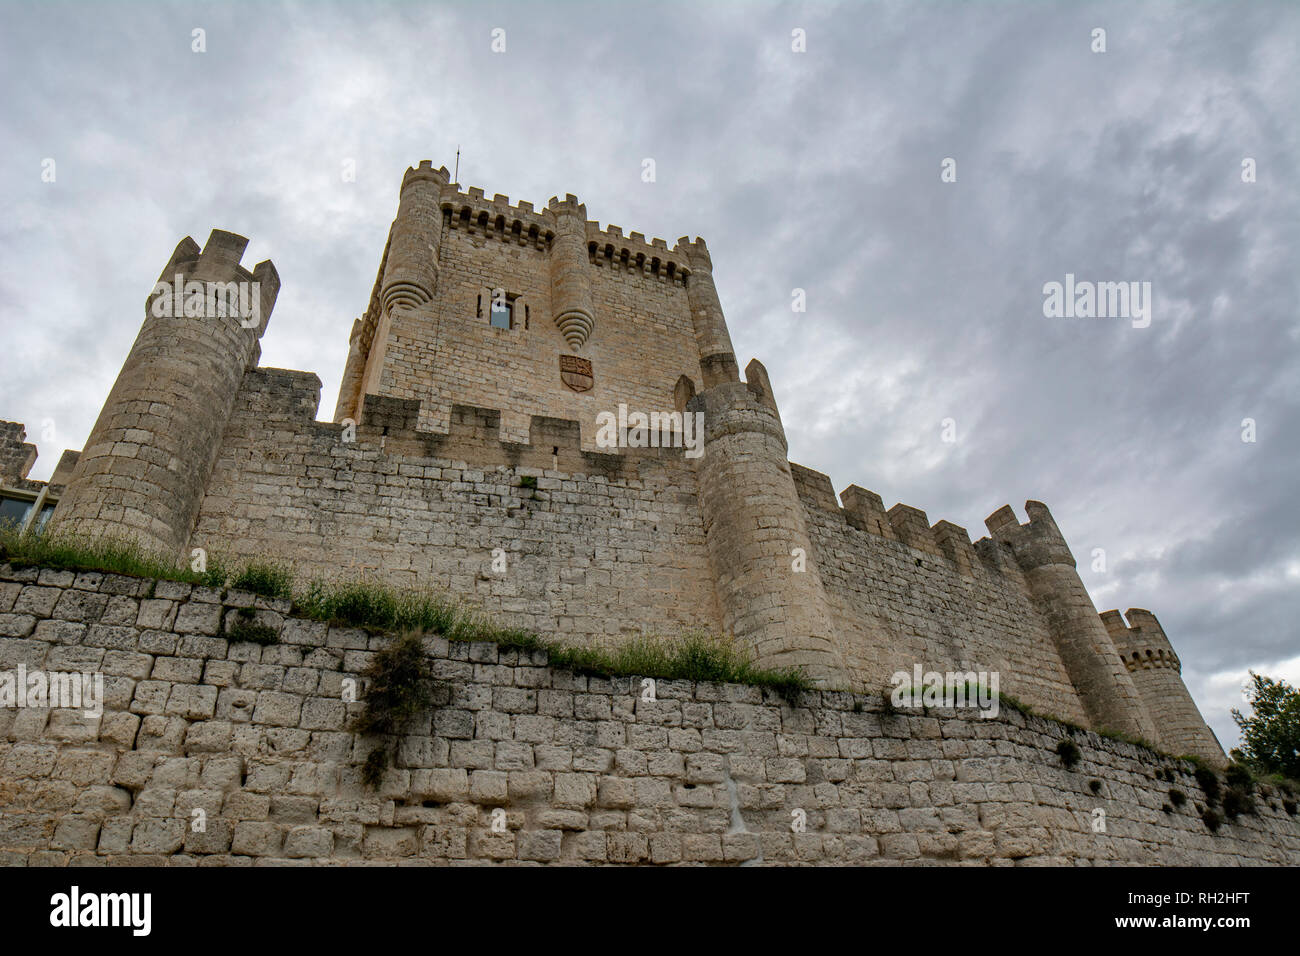 Peñafiel, Valladolid, España; Abril 2015: Detailed view of the castle of Peñafiel, on the Ribera del Duero in province of Valladolid Stock Photo